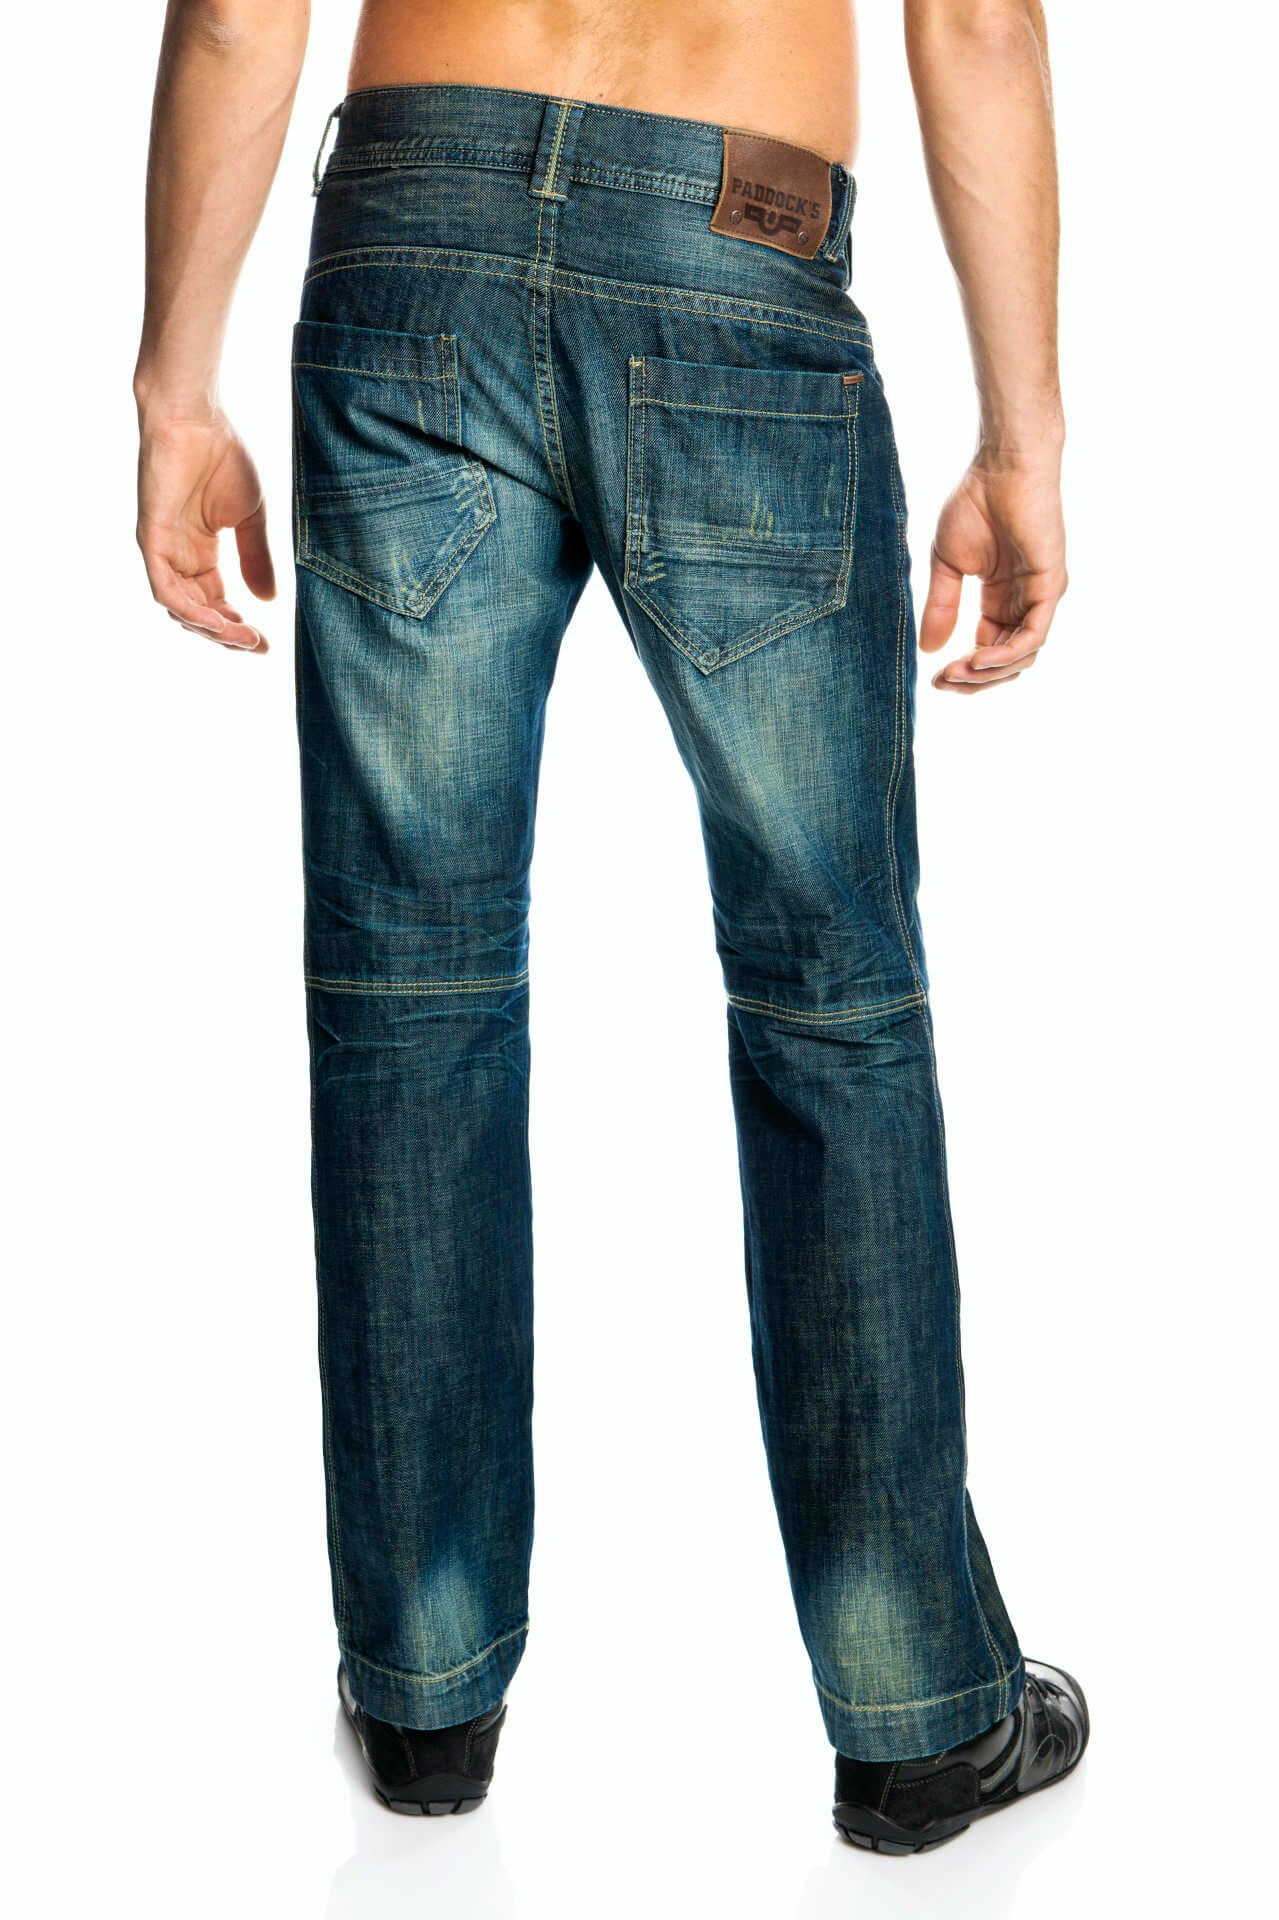 Paddock's Jeans Jones